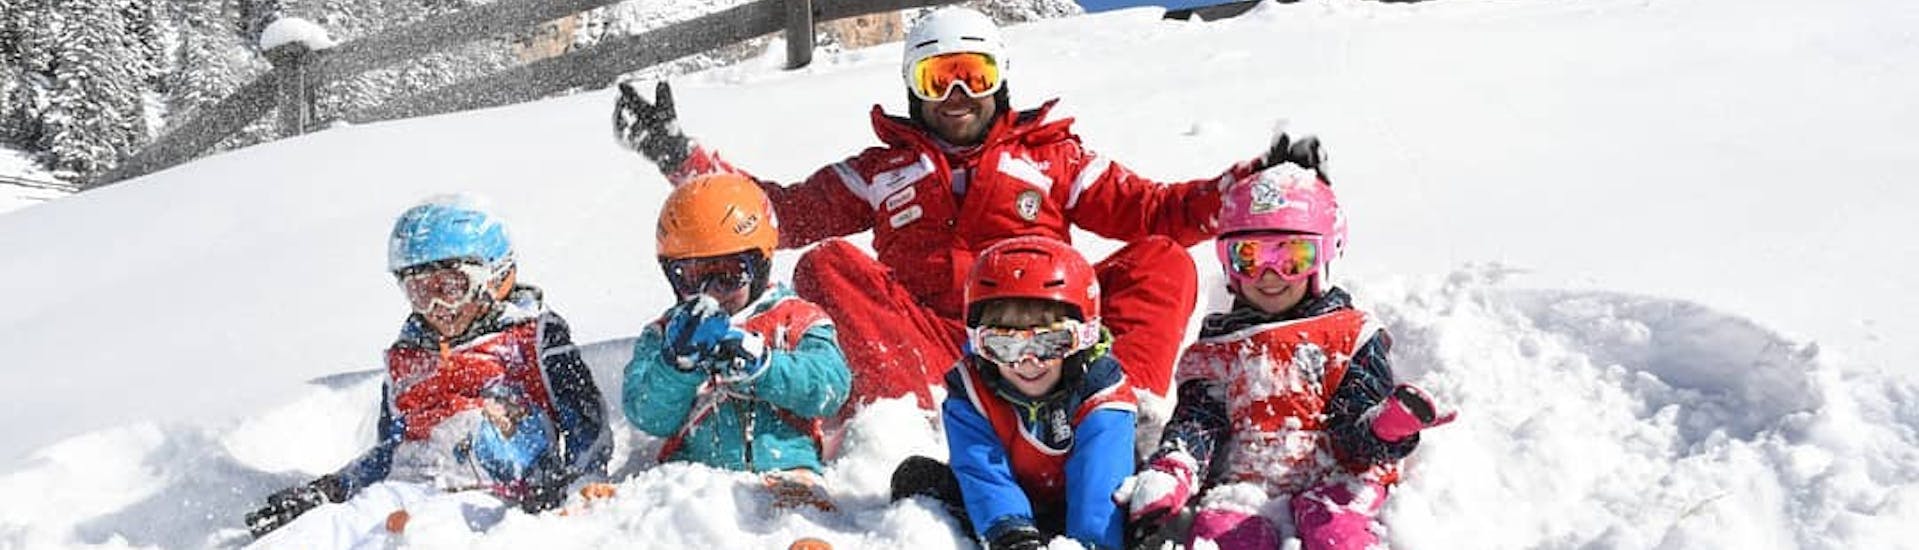 Bambini e maestro di sci si divertono sulla neve dopo una delle lezioni di sci per principianti a Selva di Val Gardena.